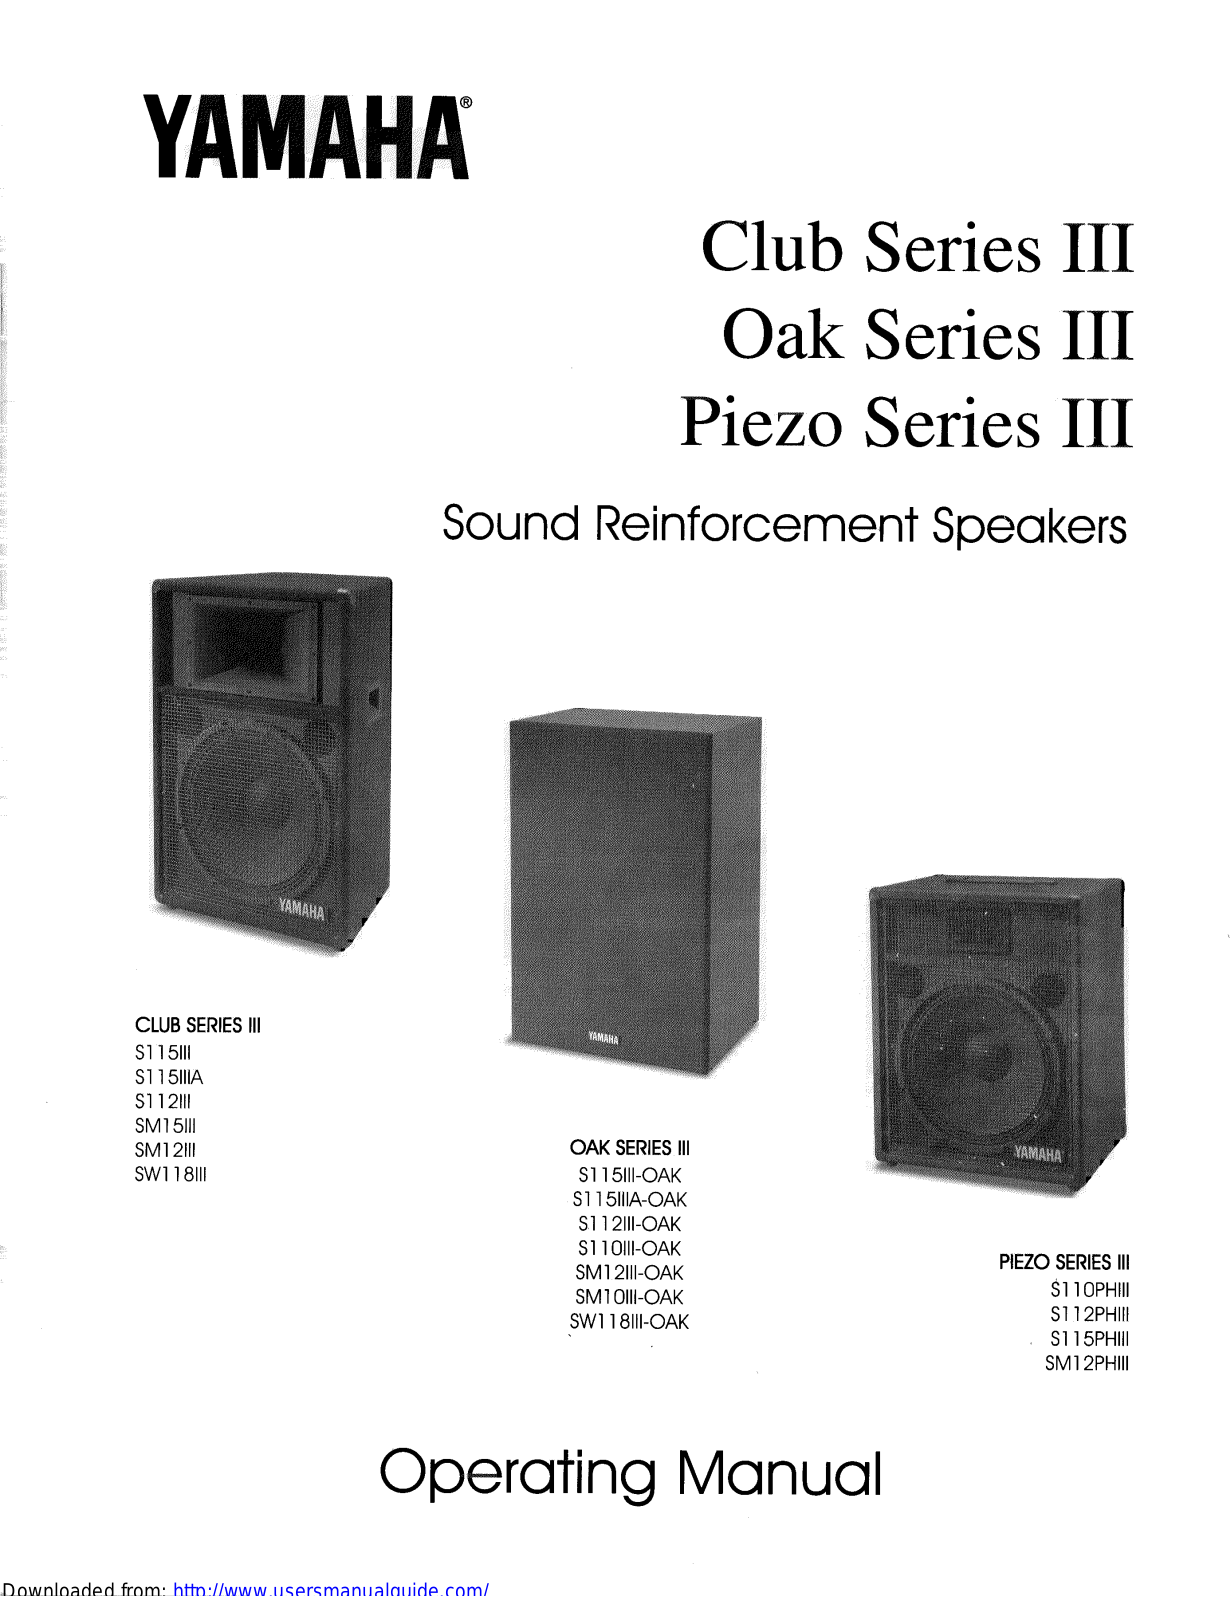 Yamaha Audio Club Series III, Oak Series III, Piezo Series III User Manual